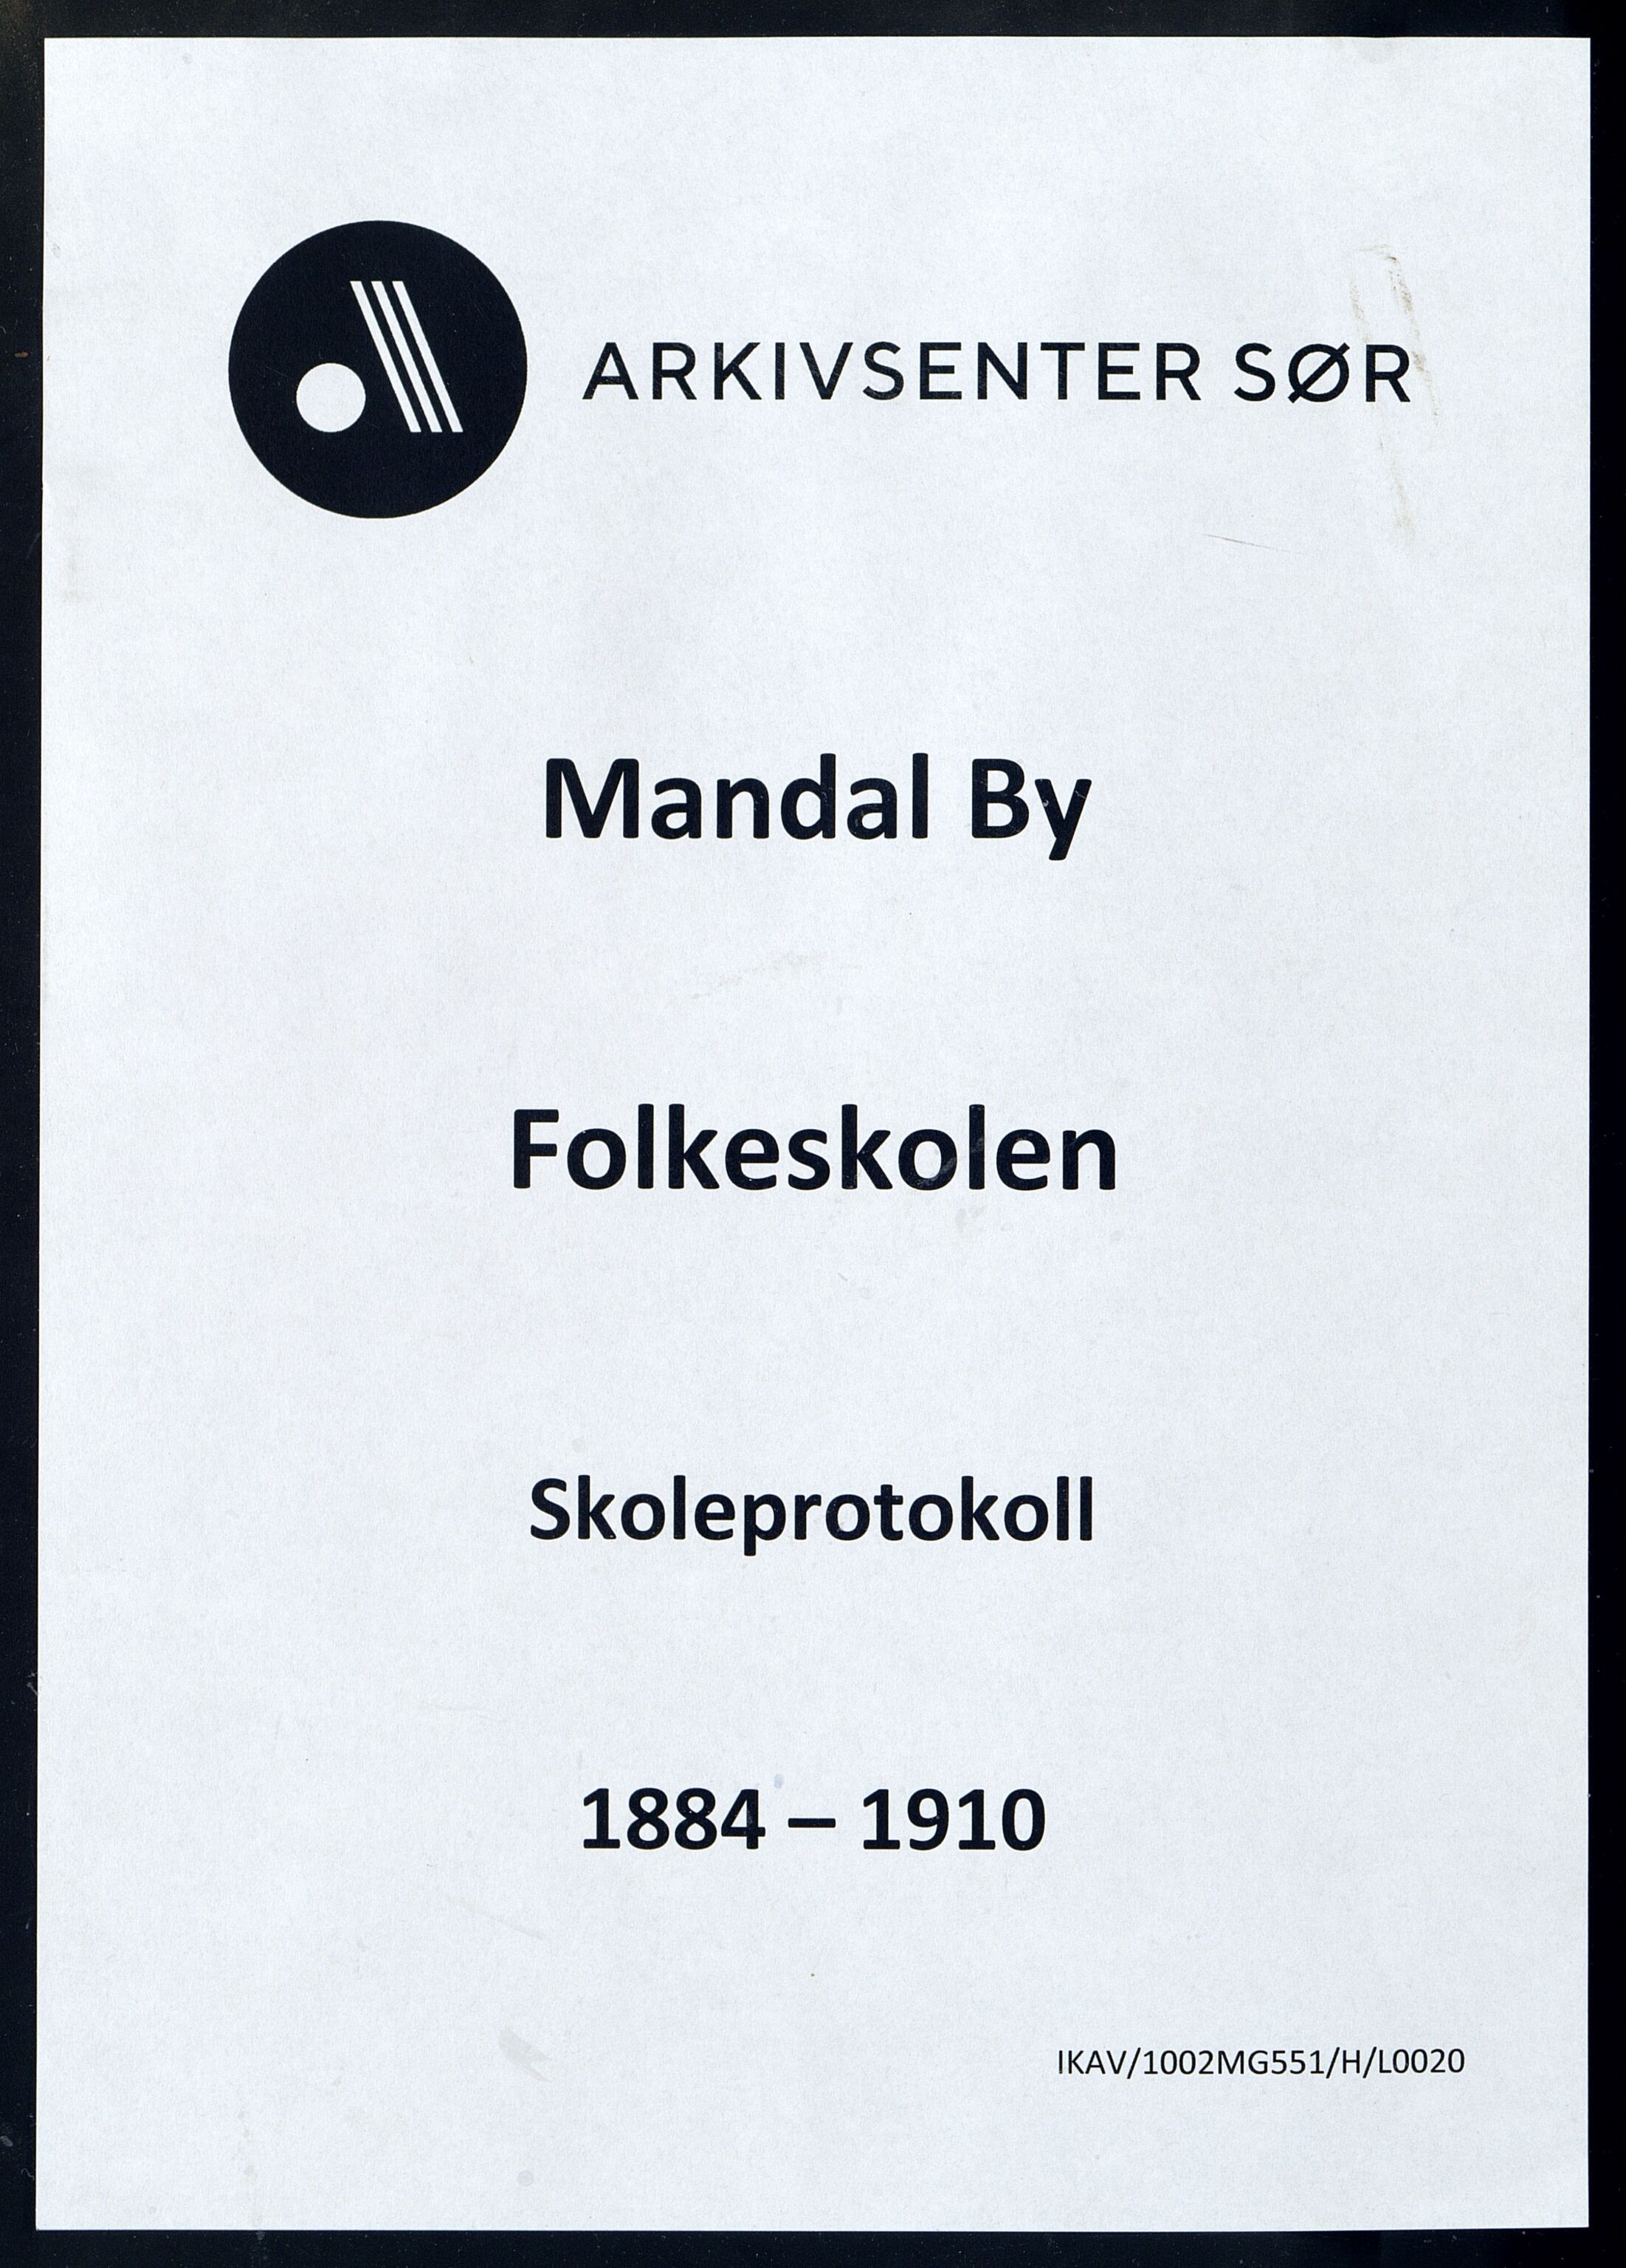 Mandal By - Mandal Allmueskole/Folkeskole/Skole, IKAV/1002MG551/H/L0020: Skoleprotokoll, 1884-1910